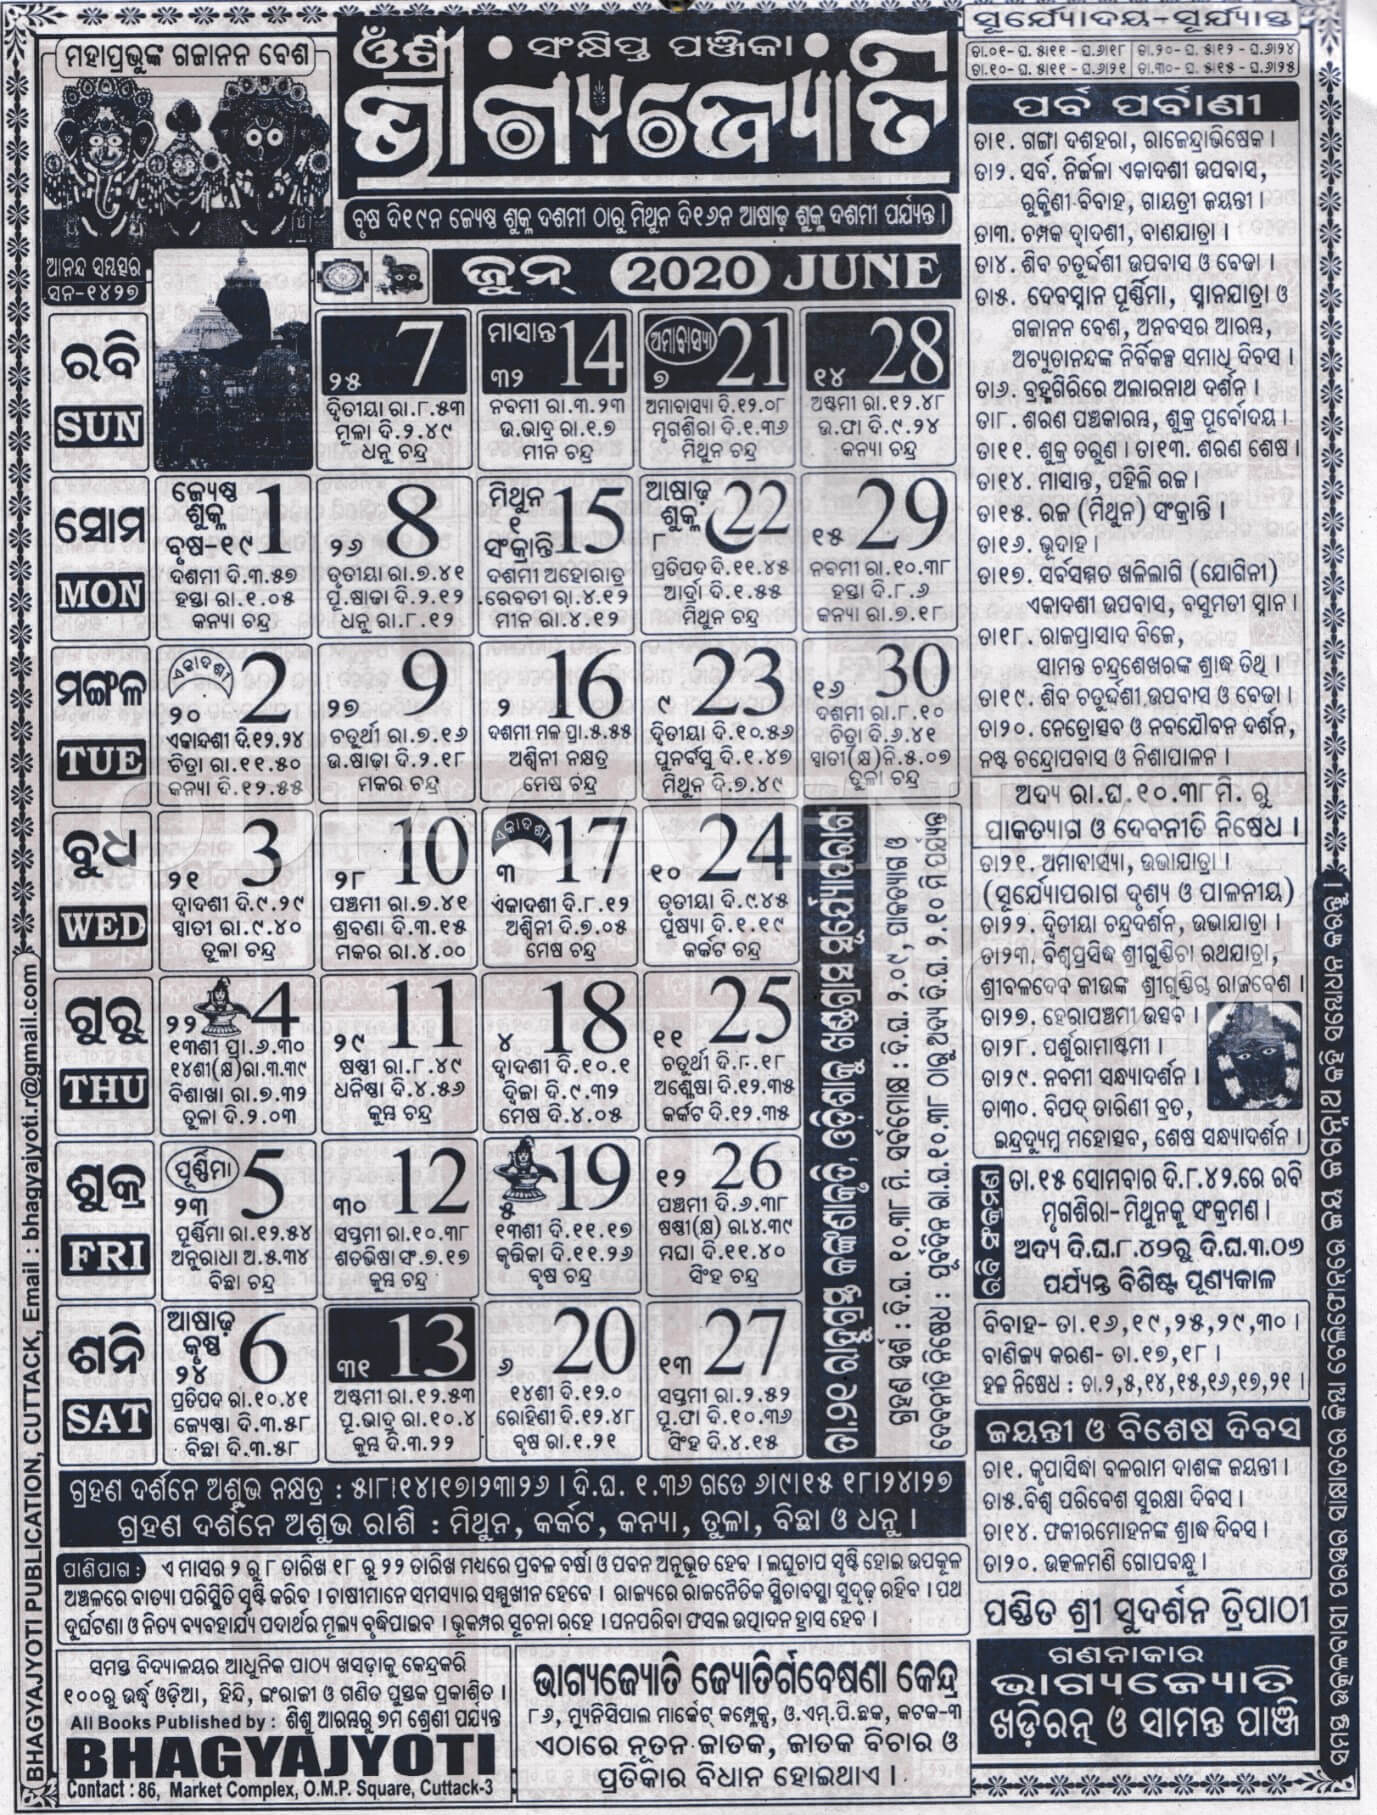 Bhagyajyoti Calendar 2020 June